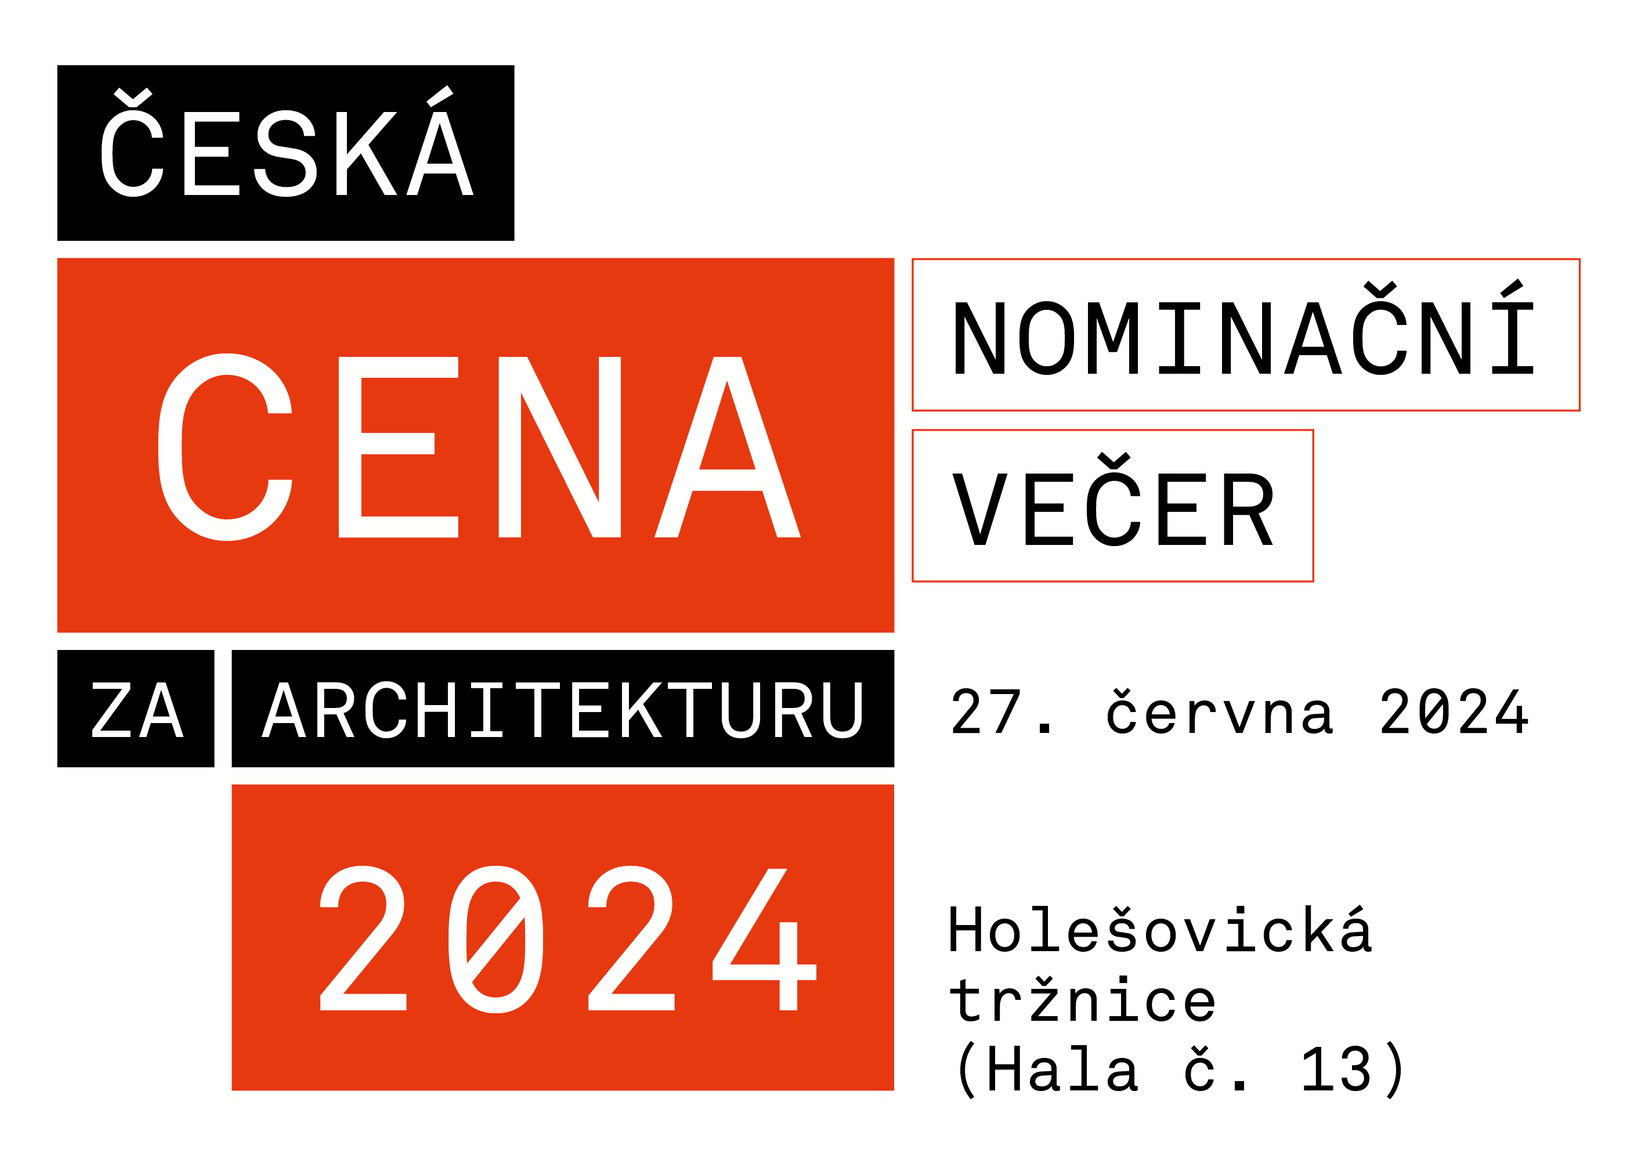 Nominační večer České ceny za architekturu 2024